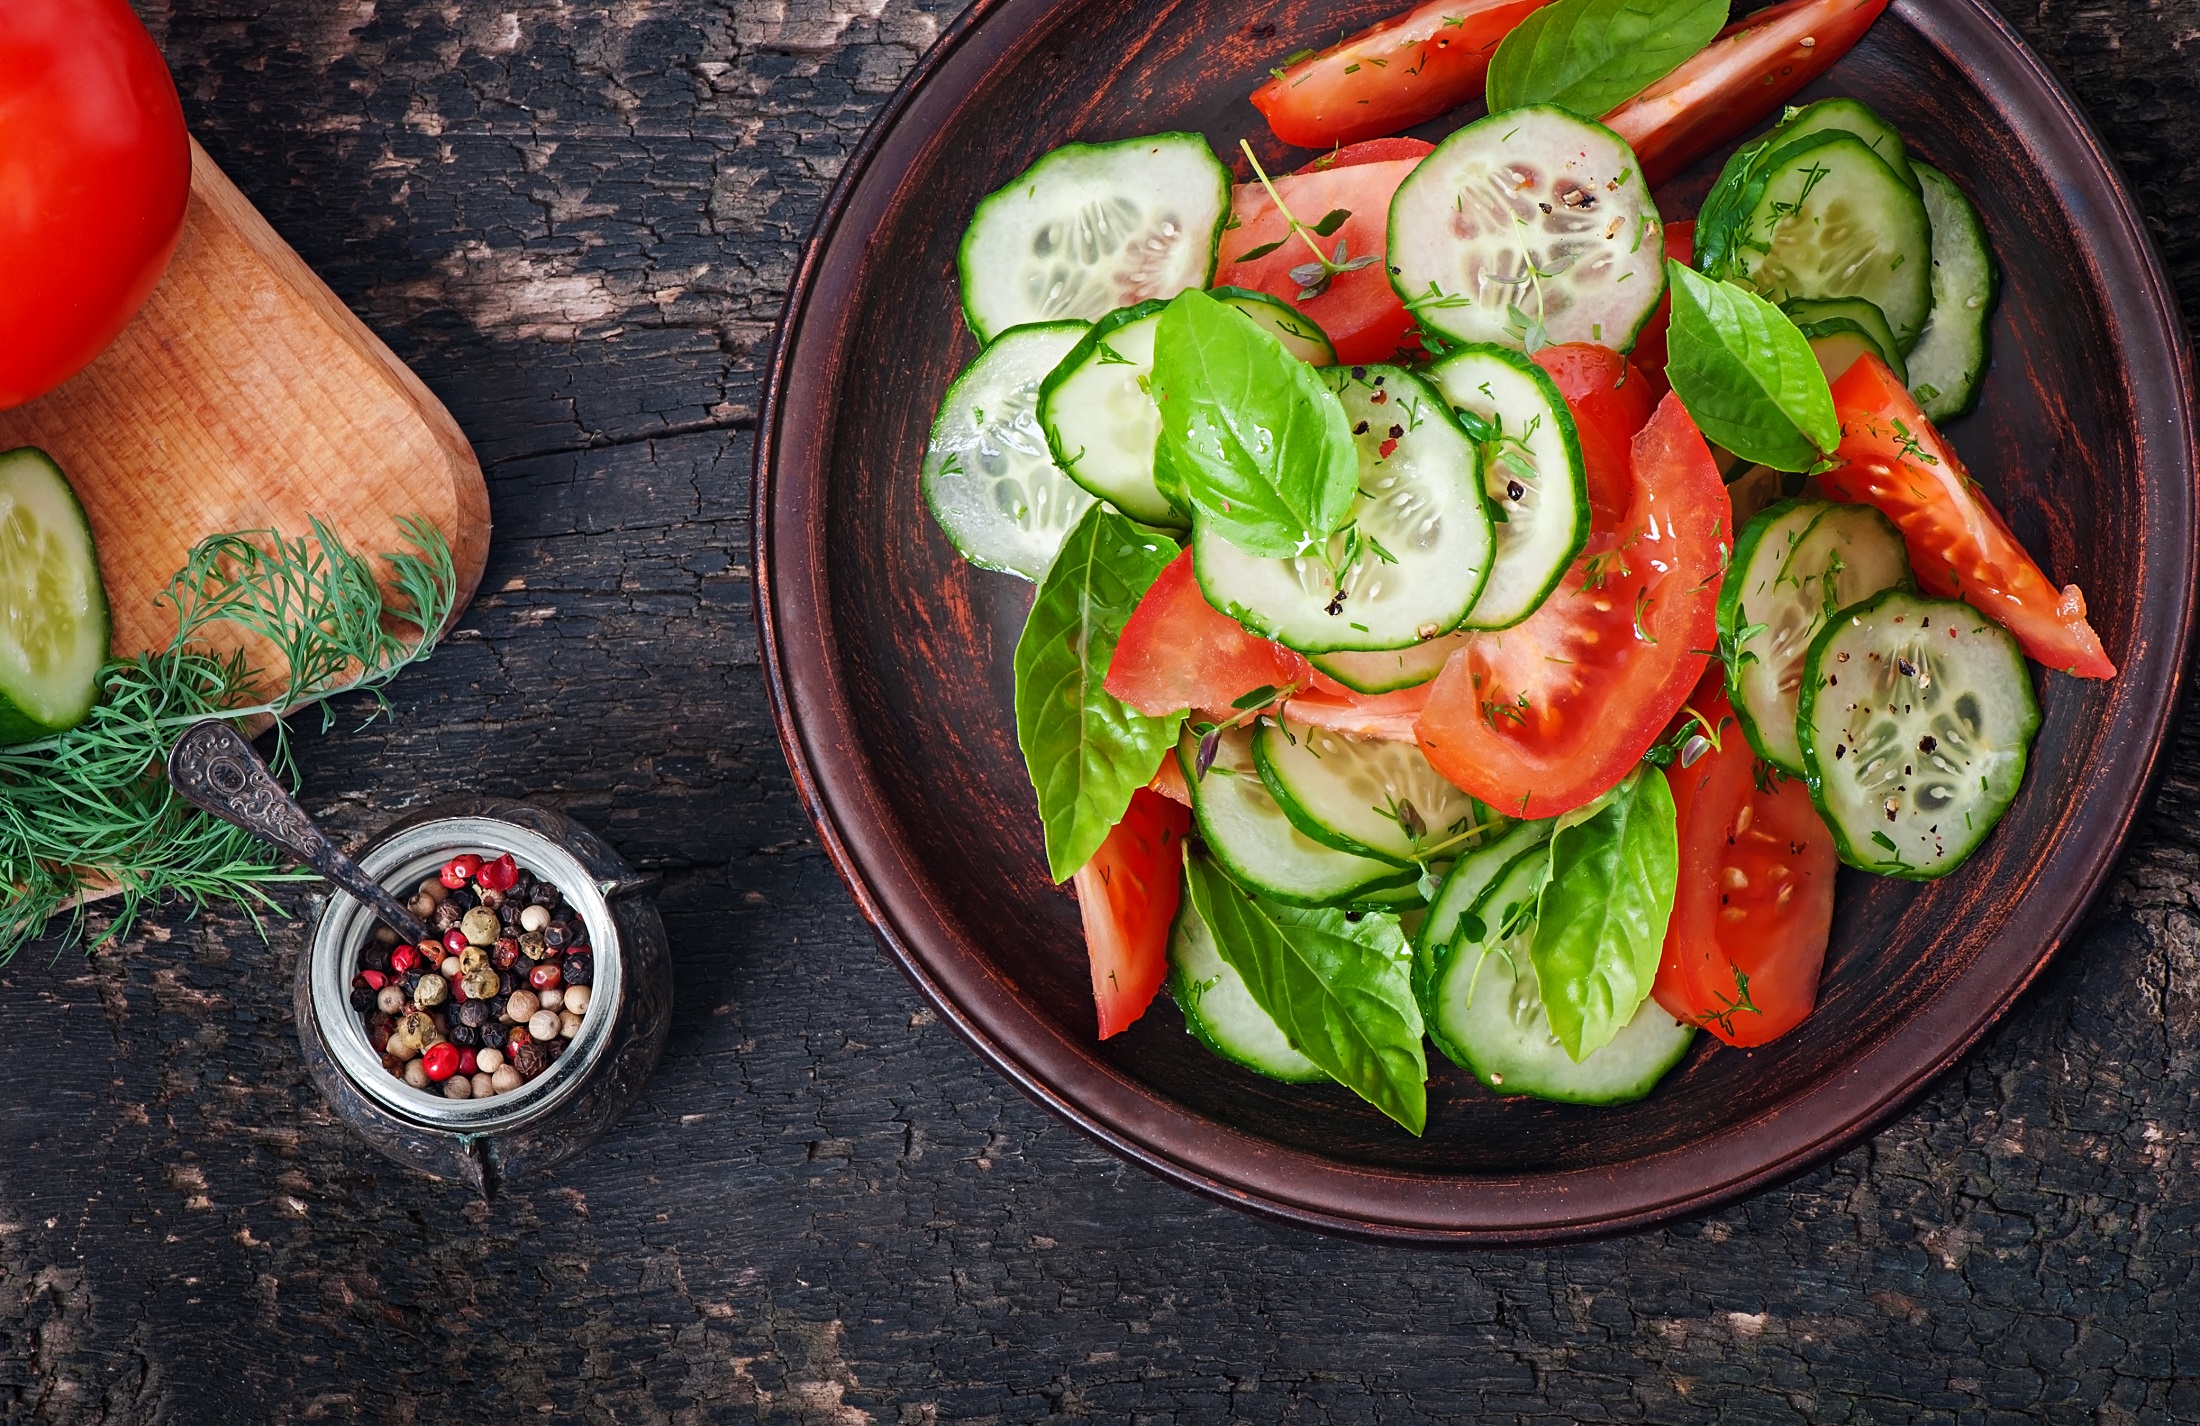 Draufsicht: Dunkler Untergrund mit einem Teller Tomaten-Gurken-Salat mit Basilikum. Daneben einen kleine Schale mit bunten Pfefferkörner und frischen Kräutern.